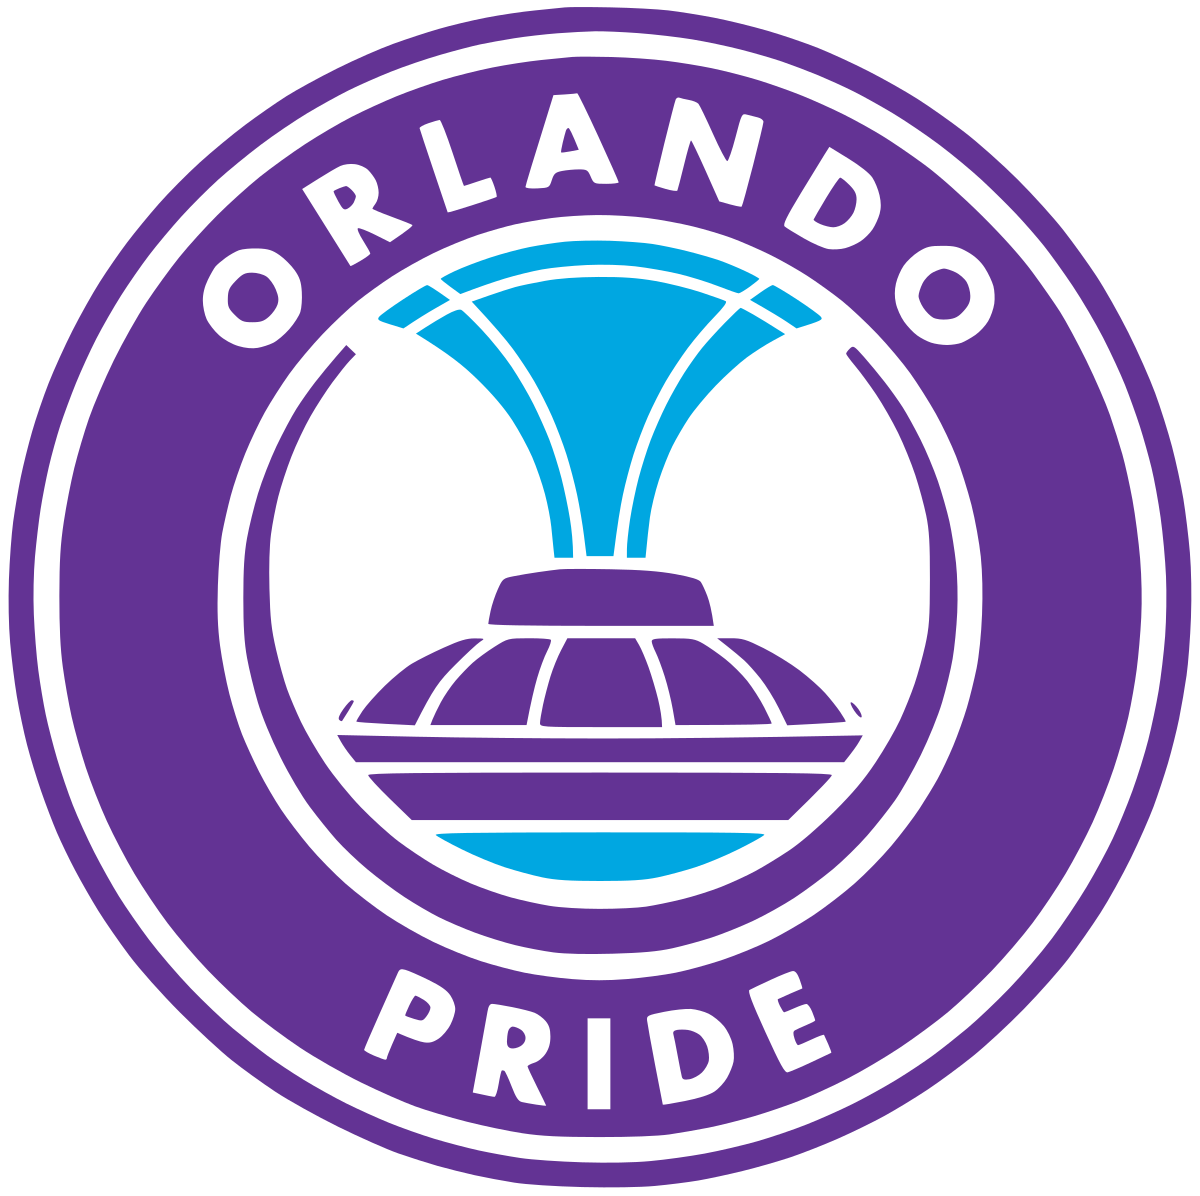 Orlando Pride - Wikipedia